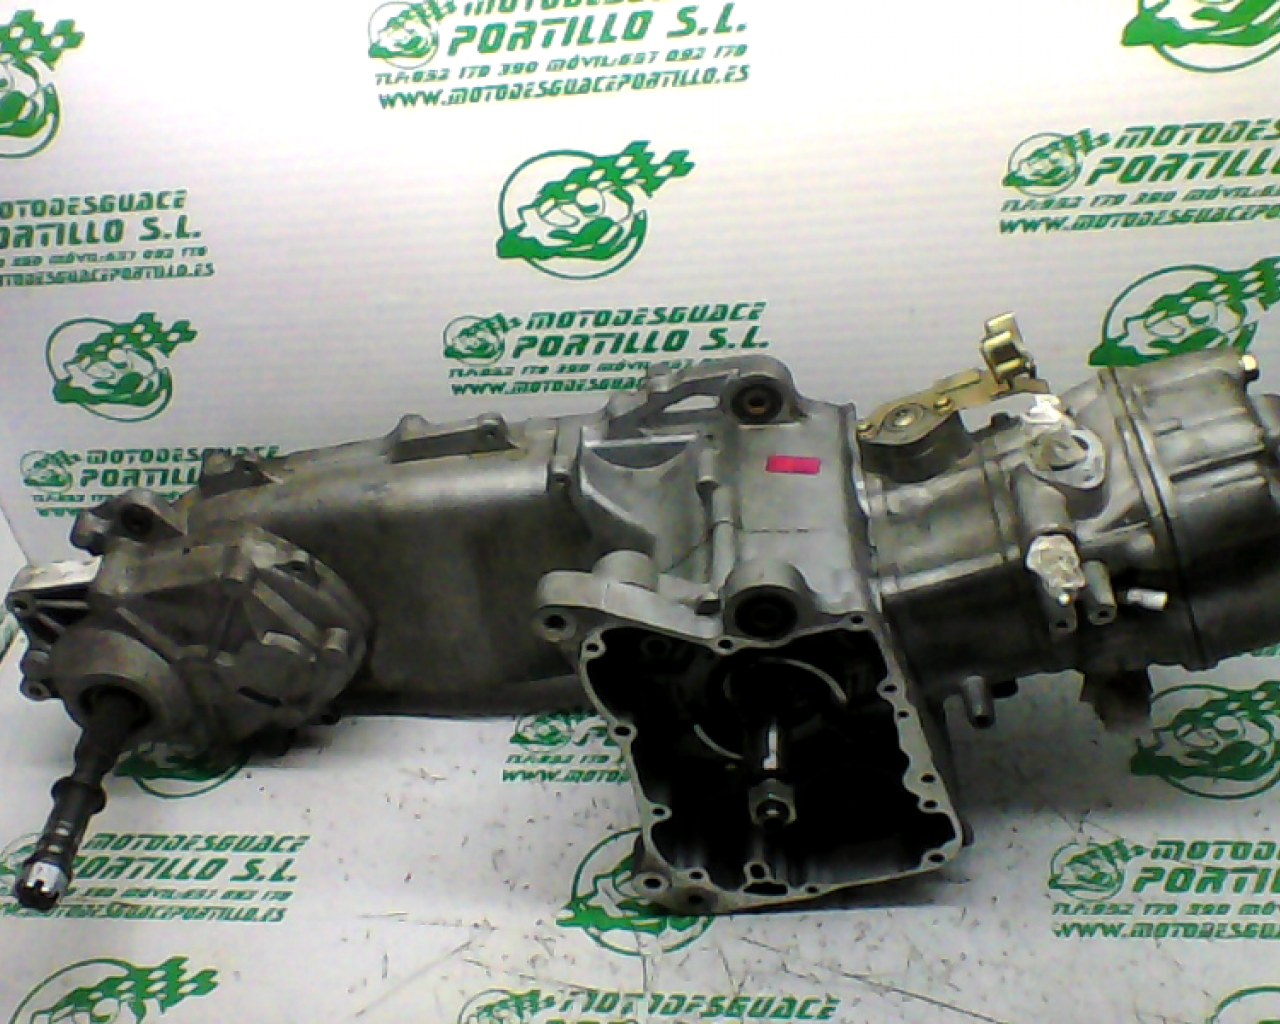 Motor Benelli MACIS (2015-2017)